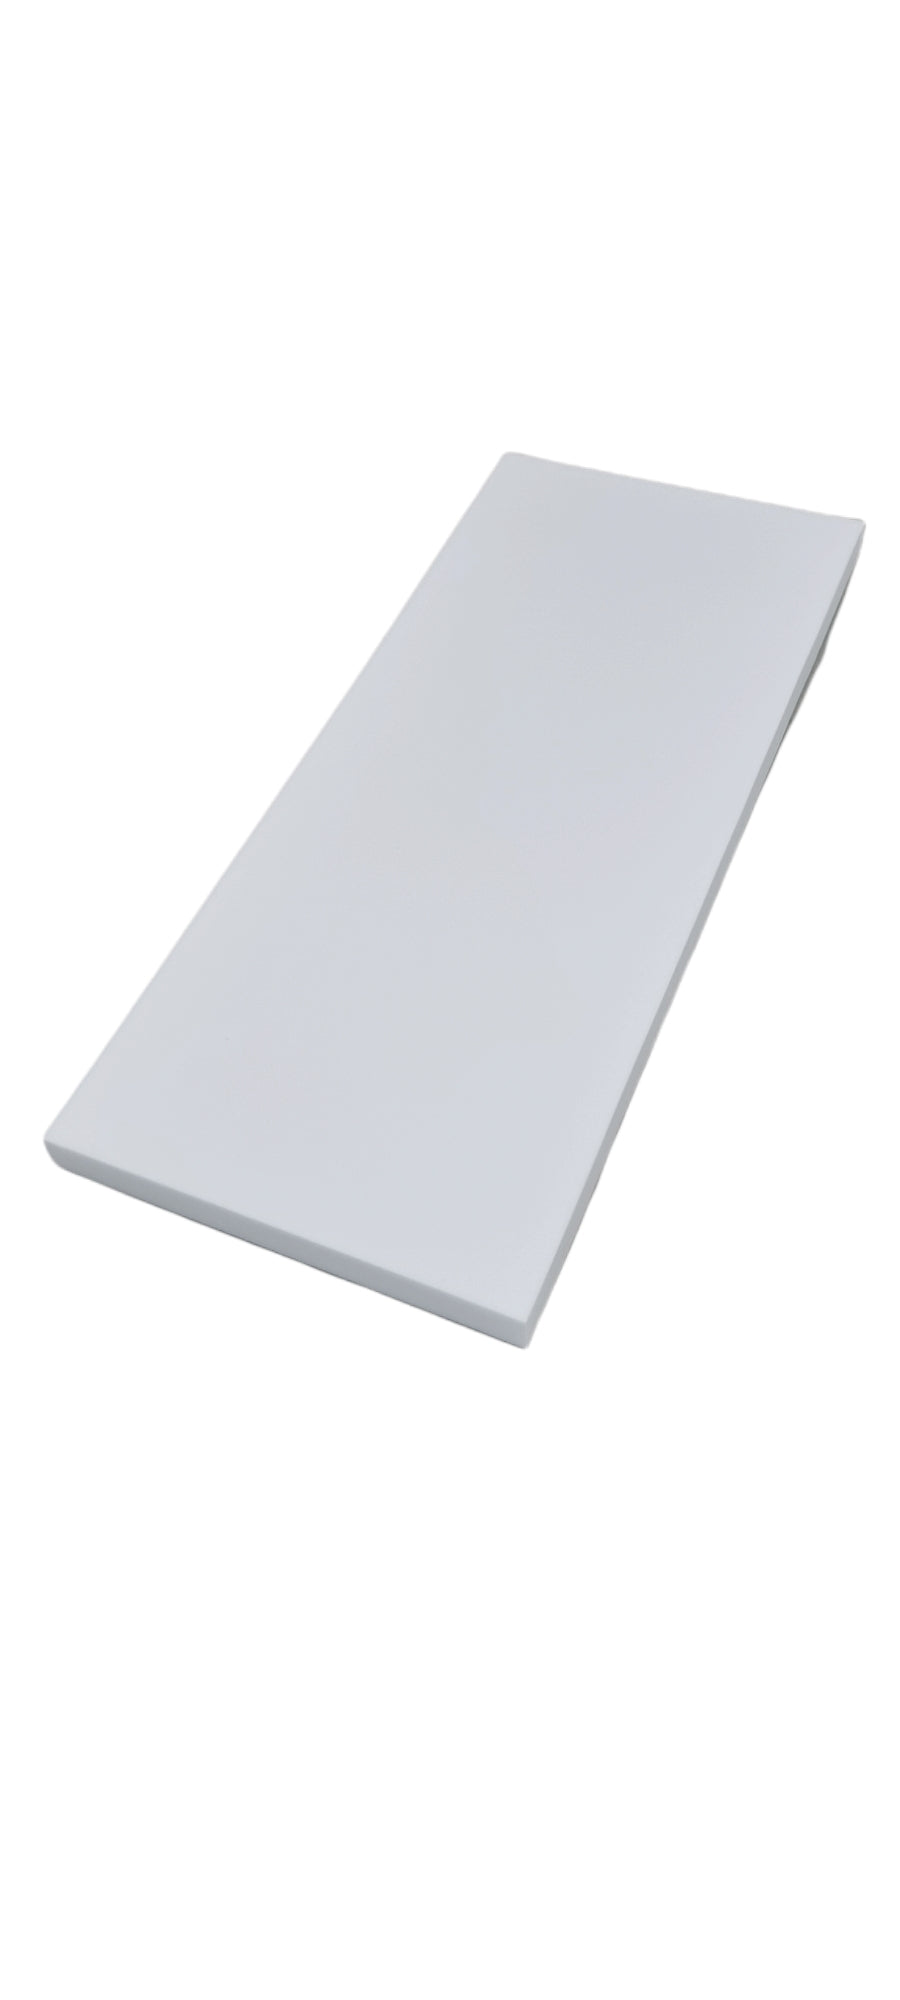 Pro-coustix Melaflex  Evo Foam Ceiling Panels Baffles Flat 1200x500x50mm